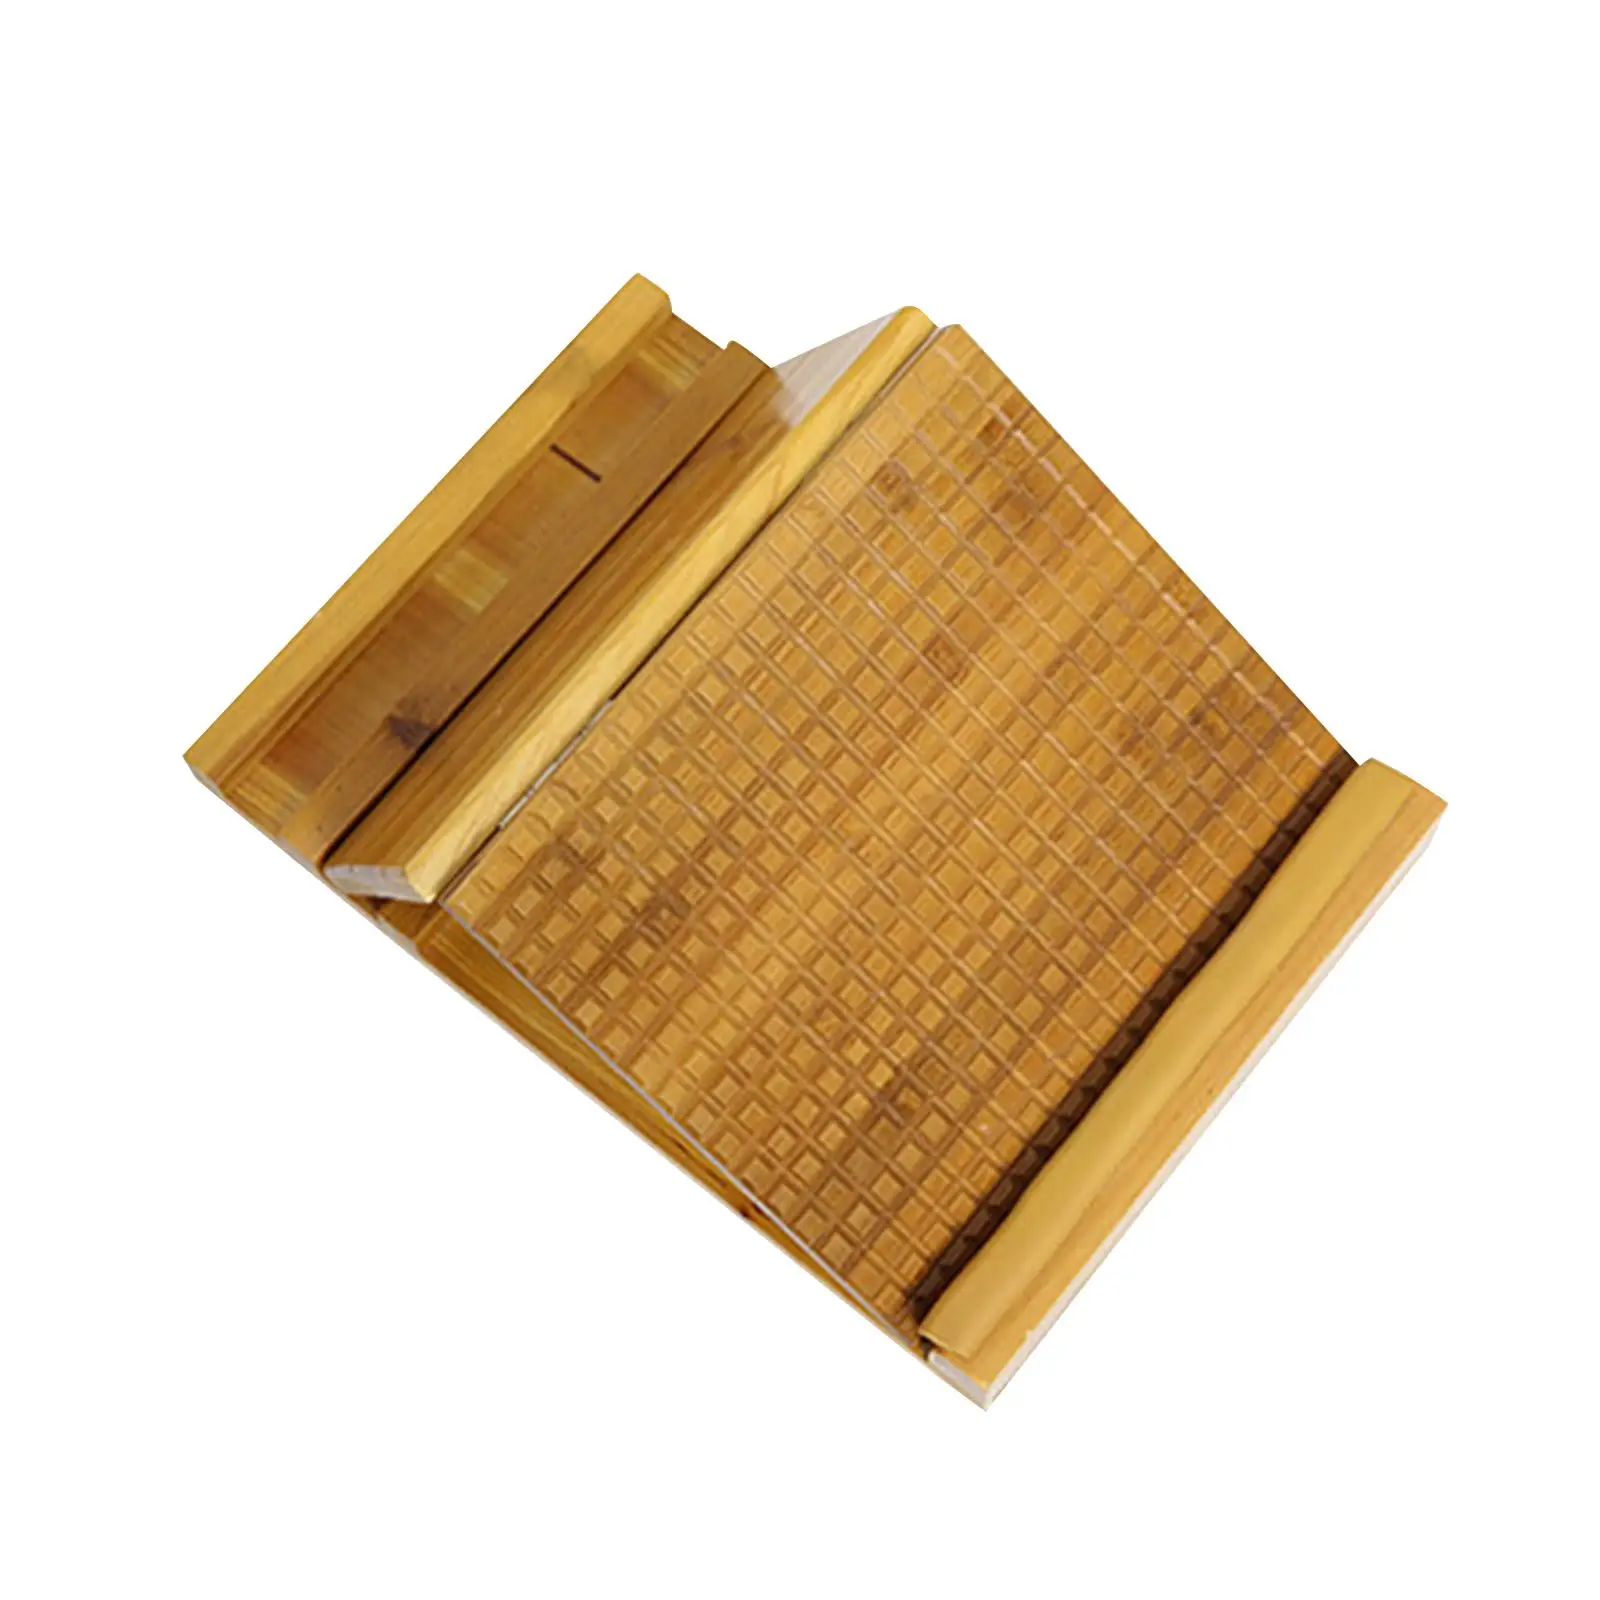 Solid Wood Slant Board Wood Incline Board Professional Wooden Slant Board